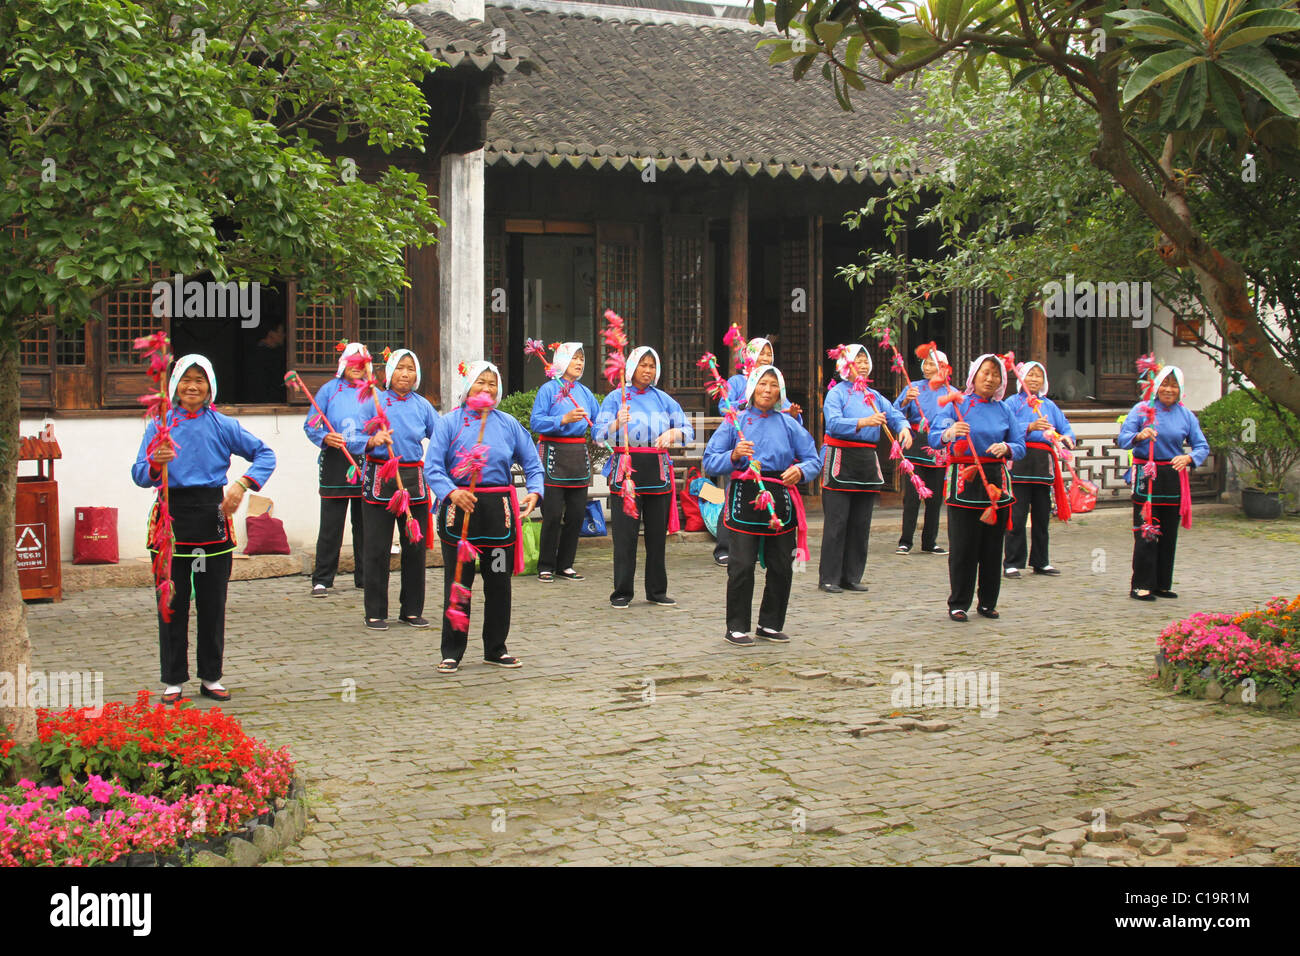 Chinese women doing a dance exhibition. ZhouZhuang historic water town, Jiangsu, China. Stock Photo